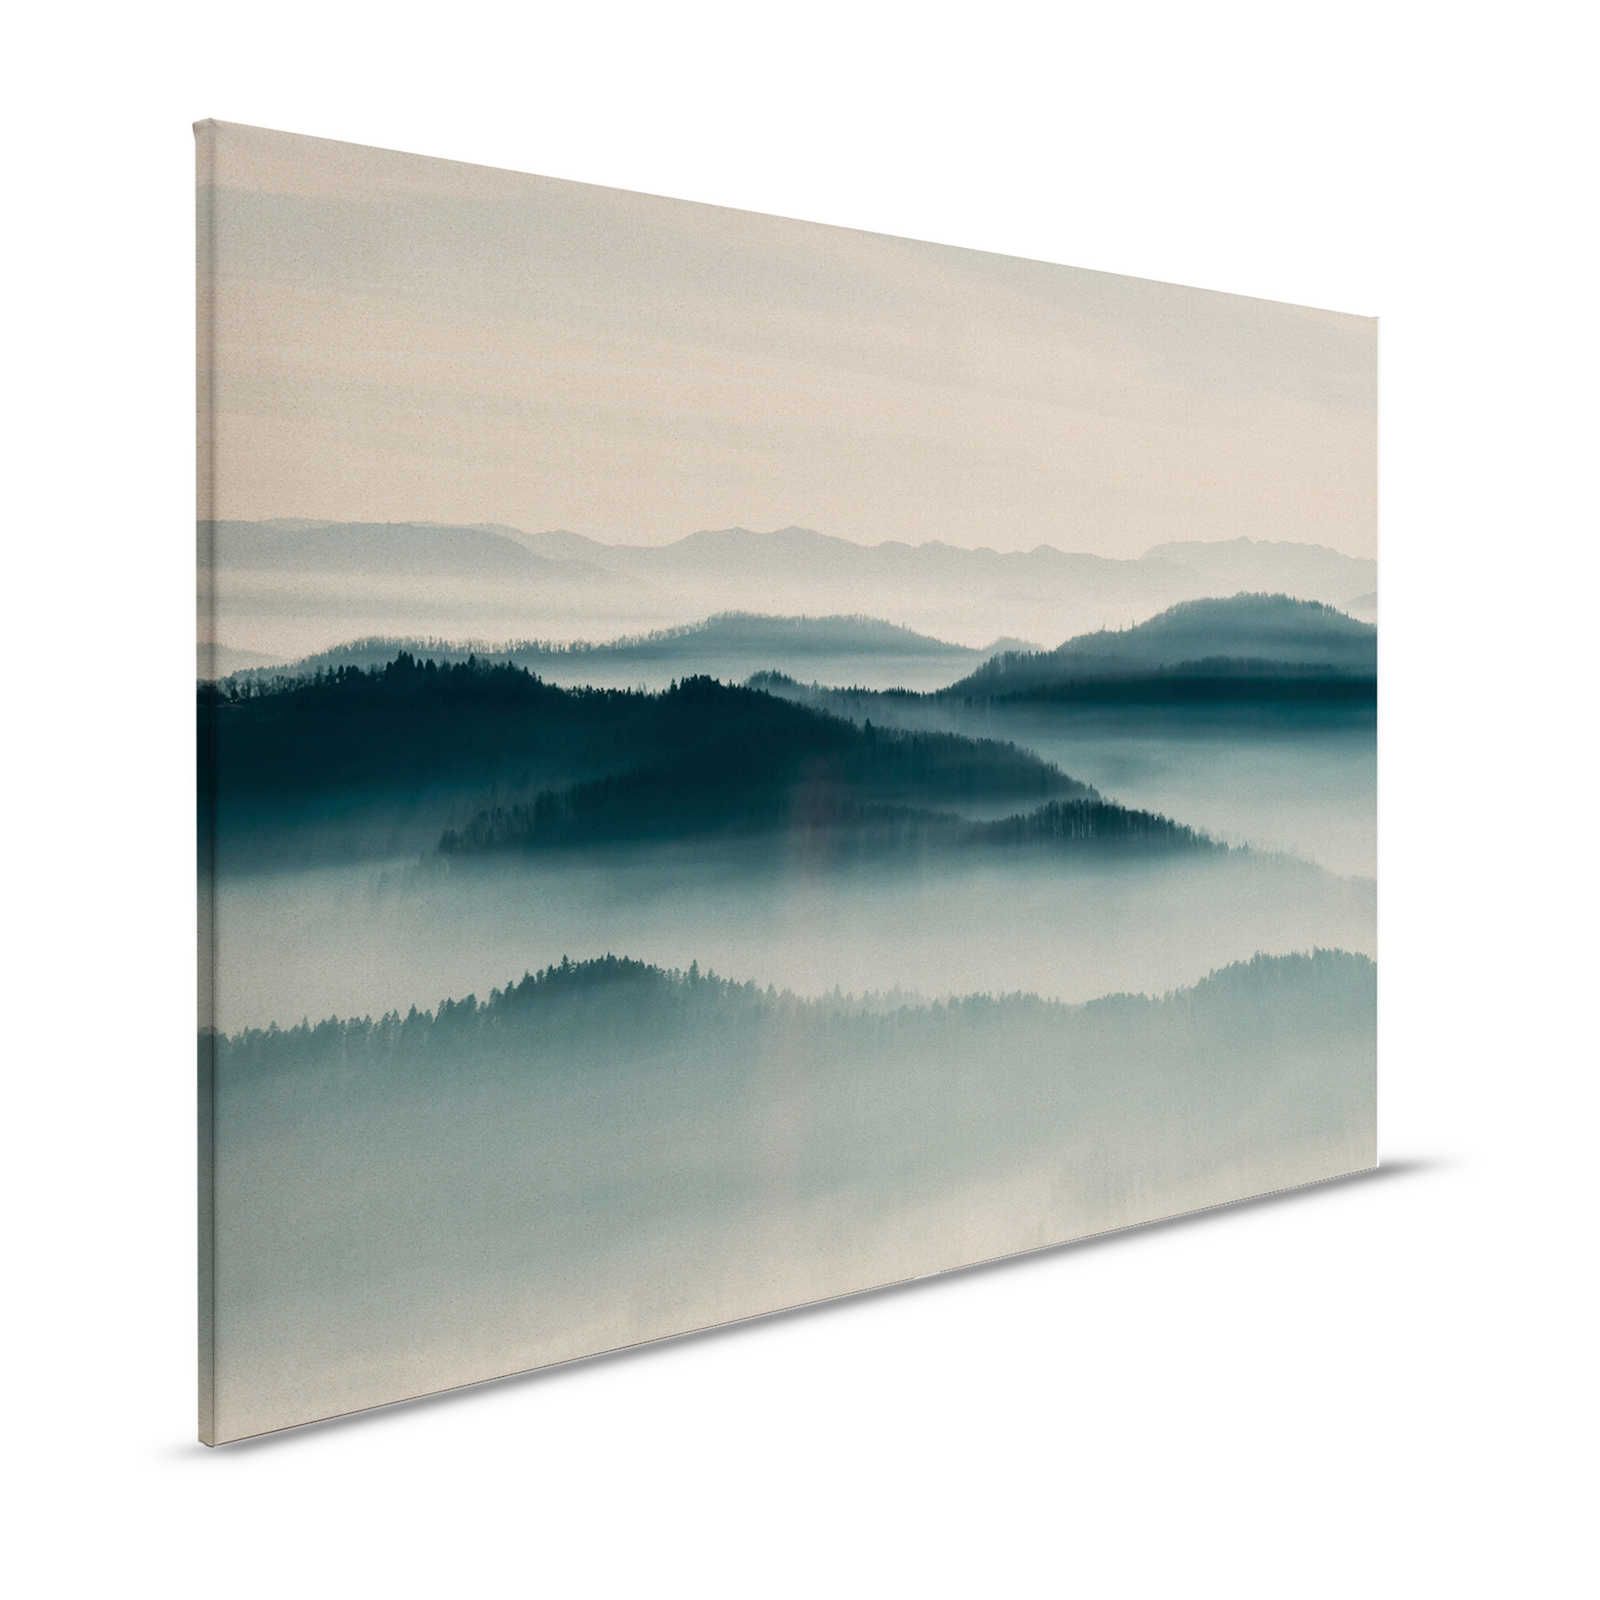 Horizon 1 - Toile avec paysage de brume, nature Sky Line - 1,20 m x 0,80 m
